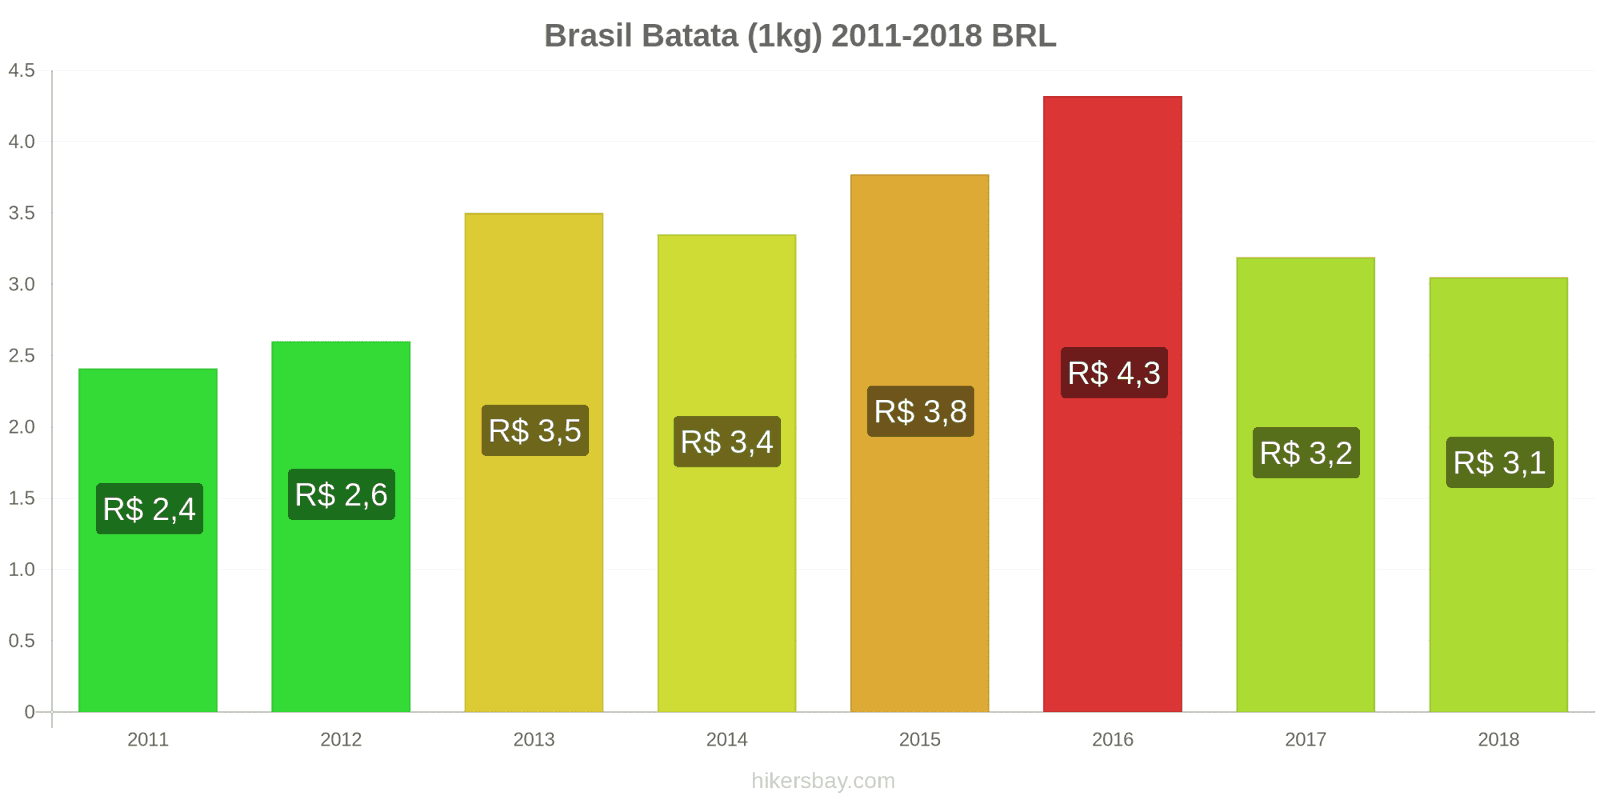 Brasil mudanças de preços Batatas (1kg) hikersbay.com